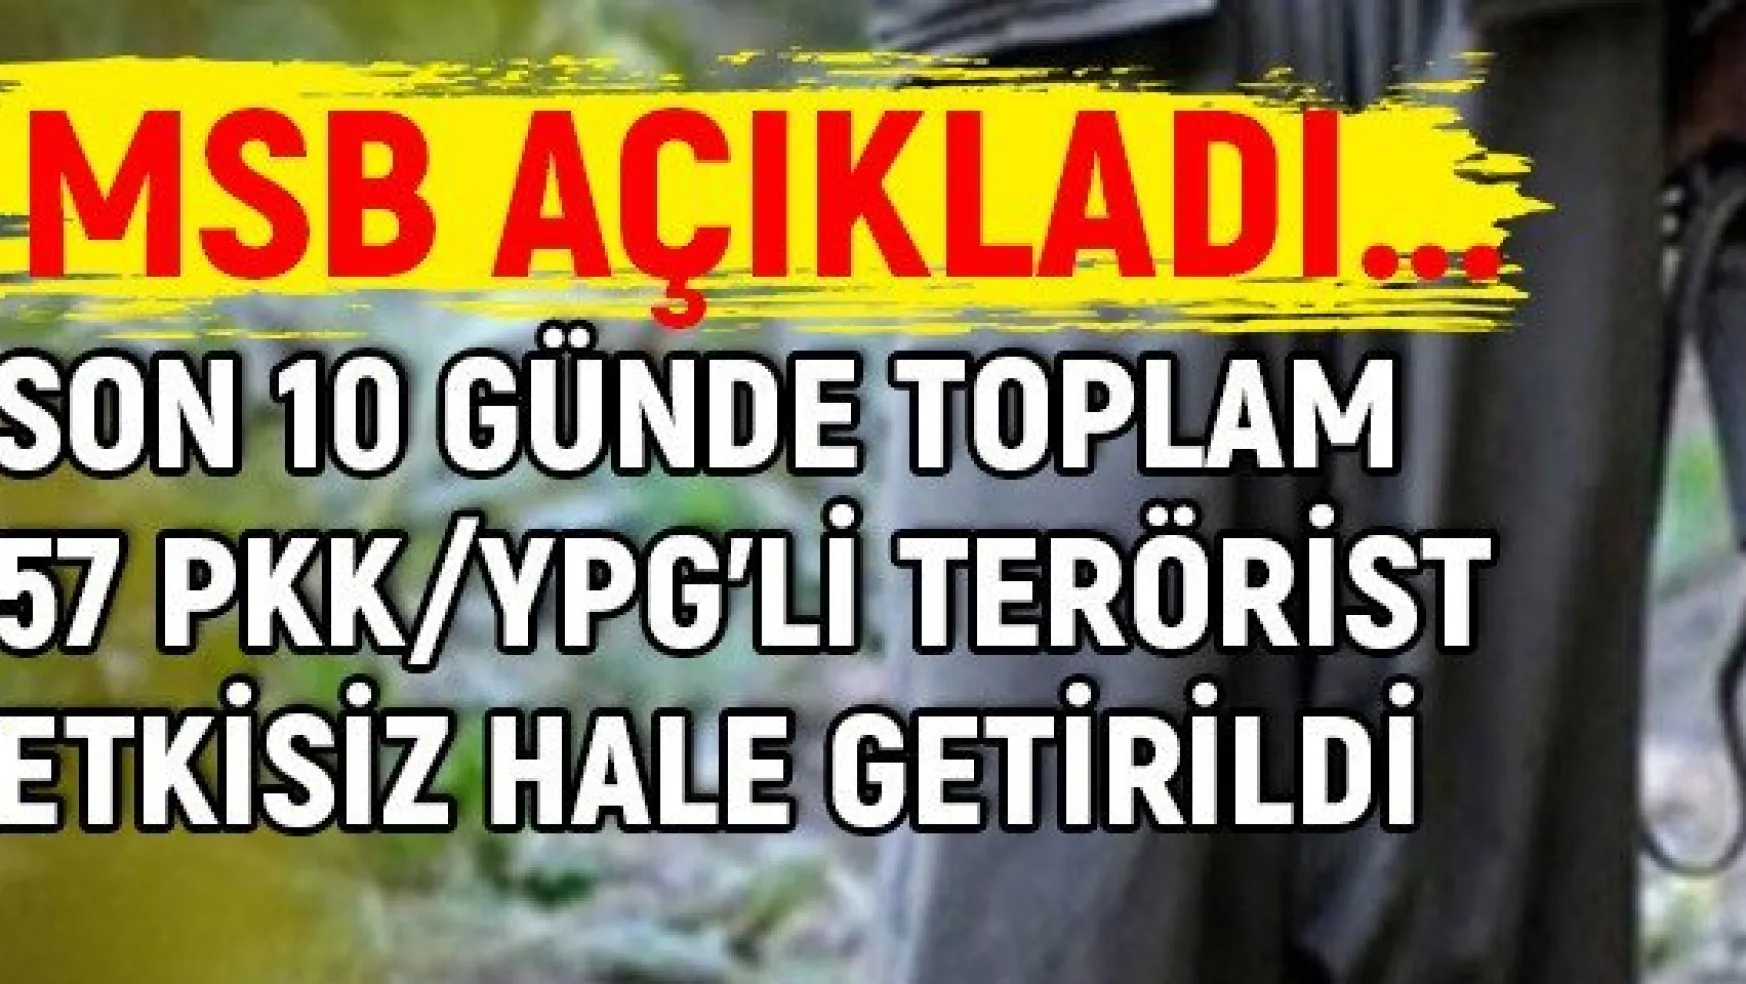 Son 10 günde toplam 57 PKK/YPG'li terörist etkisiz hale getirildi